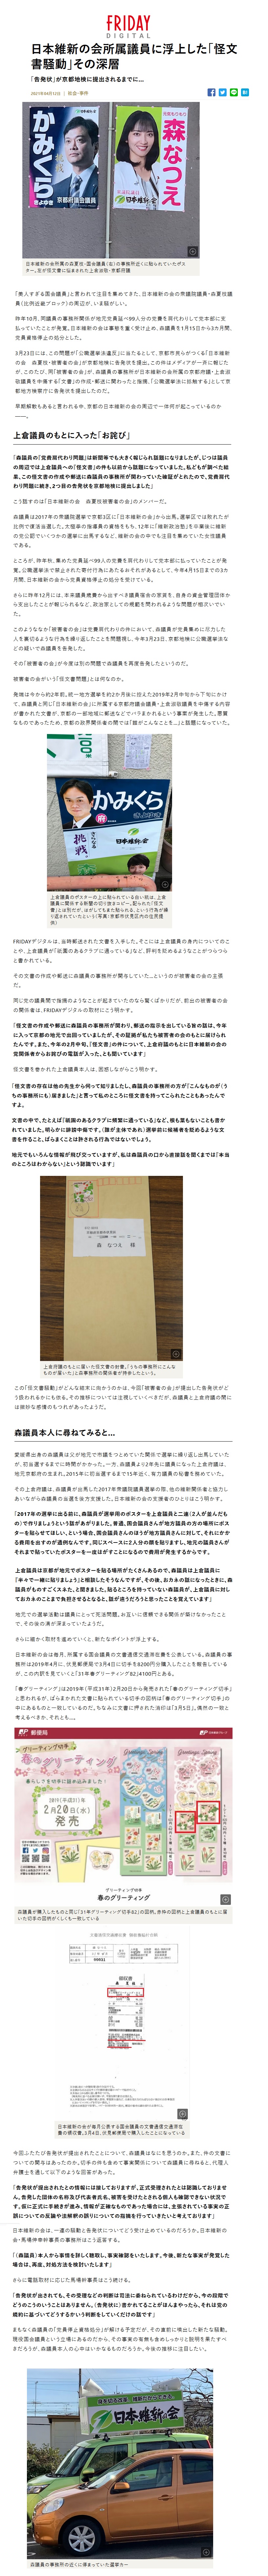 日本維新の会所属議員に浮上した「怪文書騒動」その深層「告発状」が京都地検に提出されるまでに…2021年04月12日日本維新の会所属の森夏枝・国会議員（右）の事務所近くに貼られていたポスター。左が怪文書に悩まされた上倉淑敬・京都府議「美人すぎる国会議員」と言われて注目を集めてきた、日本維新の会の衆議院議員・森夏枝議員（比例近畿ブロック）の周辺が、いま騒がしい。昨年10月、同議員の事務所関係が地元党員延べ99人分の党費を肩代わりして党本部に支払っていたことが発覚。日本維新の会は事態を重く受け止め、森議員を1月15日から3カ月間、党員資格停止の処分とした。 3月23日には、この問題が「公職選挙法違反」に当たるとして、京都市民らがつくる「日本維新の会　森夏枝・被害者の会」が京都地検に告発状を提出。この件はメディアが一斉に報じたが、このたび、同「被害者の会」が、森議員の事務所が日本維新の会所属の京都府議・上倉淑敬議員を中傷する「文書」の作成・郵送に関わったと指摘、「公職選挙法に抵触する」として京都地方検察庁に告発状を提出したのだ。早期解散もあると言われる中、京都の日本維新の会の周辺で一体何が起こっているのか。上倉議員のもとに入った「お詫び」「森議員の『党費肩代わり問題』は新聞等でも大きく報じられ話題になりましたが、じつは議員の周辺では上倉議員への『怪文書』の件も以前から話題になっていました。私どもが調べた結果、この怪文書の作成や郵送に森議員の事務所が関わっていた確証がとれたので、党費肩代わり問題に続き、2つ目の告発状を京都地検に提出しました」こう話すのは「日本維新の会　森夏枝被害者の会」のメンバーだ。森議員は2017年の衆議院選挙で京都3区に「日本維新の会」から出馬。選挙区では敗れたが比例で復活当選した。太極拳の指導員の資格をもち、12年に「維新政治塾」を卒業後に維新の党公認でいくつかの選挙に出馬するなど、維新の会の中でも注目を集めていた女性議員である。ところが、昨年秋、集めた党員延べ99人の党費を肩代わりして党本部に払っていたことが発覚。公職選挙法で禁止された寄付行為にあたるおそれがあるとして、今年4月15日までの3カ月間、日本維新の会から党員資格停止の処分を受けている。さらに昨年12月には、本来議員歳費から出すべき議員宿舎の家賃を、自身の資金管理団体から支出したことが報じられるなど、政治家としての規範を問われるような相次いでいた。このようななか「被害者の会」は党費肩代わりの件において、森議員が党員集めに尽力した人を裏切るような行為を繰り返したことを問題視し、今年3月23日、京都地検に公職選挙法などの疑いで森議員を告発した。その「被害者の会」が今度は別の問題で森議員を再度告発したというのだ。被害者の会がいう「怪文書問題」とは何なのか。発端は今から約2年前。統一地方選挙を約2か月後に控えた2019年2月中旬から下旬にかけて、森議員と同じ「日本維新の会」に所属する京都府議会議員・上倉淑敬議員を中傷する内容が書かれた文書が、京都の一部地域に郵送などでバラまかれるという事案が発生した。悪質なものであったため、京都の政界関係者の間では「誰がこんなことを…」と話題になっていた。上倉議員のポスターの上に貼られている白い紙は、上倉議員に関係する新聞の切り抜きコピー。配られた「怪文書」とは別だが、はがしてもまた貼られる、という行為が繰り返されていたという（写真：京都市伏見区内の住民提供）FRIDAYデジタルは、当時郵送された文書を入手した。そこには上倉議員の身内についてのことや、上倉議員が「祇園のあるクラブに通っている」など、評判を貶めるようなことがつらつらと書かれている。その文書の作成や郵送に森議員の事務所が関与していた…というのが被害者の会の主張だ。同じ党の議員間で指摘のようなことが起きていたのなら驚くばかりだが、前出の被害者の会の関係者は、FRIDAYデジタルの取材にこう明かす。「怪文書の作成や郵送に森議員の事務所が関わり、郵送の指示を出している旨の話は、今年に入って京都の地元で出回っていましたが、その証拠が私たち被害者の会のもとに届けられたんです。また、今年の2月中旬、『怪文書』の件について、上倉府議のもとに日本維新の会の党関係者からお詫びの電話が入った、とも聞いています」怪文書を巻かれた上倉議員本人は、困惑しながらこう明かす。「怪文書の存在は他の先生から伺って知りましたし、森議員の事務所の方が『こんなものが（うちの事務所にも）届きました』と言って私のところに怪文書を持ってこられたこともあったんですよ。文書の中で、たとえば『祇園のあるクラブに頻繁に通っている』など、根も葉もないことも書かれていました。明らかに誹謗中傷です。（誰が主体であれ）選挙前に候補者を貶めるような文書を作ること、ばらまくことは許される行為ではないでしょう。地元でもいろんな情報が飛び交っていますが、私は森議員の口から直接話を聞くまでは『本当のところはわからない』という認識でいます」上倉府議のもとに届いた怪文書の封書。「うちの事務所にこんなものが届いた」と森事務所の関係者が持参したという。この「怪文書騒動」がどんな結末に向かうのかは、今回「被害者の会」が提出した告発状がどう扱われるかにも依る。その推移については注視していくべきだが、森議員と上倉府議の間には微妙な感情のもつれがあったようだ。森議員本人に尋ねてみると…愛媛県出身の森議員は父が地元で市議をつとめていた関係で選挙に繰り返し出馬していたが、初当選するまでに時間がかかった。一方、森議員より2年先に議員になった上倉府議は、地元京都府の生まれ。2015年に初当選するまで15年近く、有力議員の秘書を務めていた。その上倉府議は、森議員が出馬した2017年衆議院議員選挙の際、他の維新関係者と協力しあいながら森議員の当選を後方支援した。日本維新の会の支援者のひとりはこう明かす。「2017年の選挙に出る前に、森議員が選挙用のポスターを上倉議員と二連（２人が並んだもの）で作りましょうという話があがりました。普通、国会議員さんが地方議員の方の場所にポスターを貼らせてほしい、という場合、国会議員さんのほうが地方議員さんに対して、それにかかる費用を出すのが通例なんです。同じスペースに２人分の顔を貼りますし、地元の議員さんがそれまで貼っていたポスターを一度はがすことになるので費用が発生するからです。上倉議員は京都が地元でポスターを貼る場所がたくさんあるので、森議員は上倉議員に『半々で一緒に貼りましょう』と相談したそうなんですが、その後、おカネの話になったときに、森議員がものすごくスネた、と聞きました。貼るところを持っていない森議員が、上倉議員に対しておカネのことまで負担させるとなると、話が違うだろうと思ったことを覚えています」地元での選挙活動は議員にとって死活問題。お互いに信頼できる関係が築けなかったことで、その後の溝が深まっていたようだ。さらに細かく取材を進めていくと、新たなポイントが浮上する。日本維新の会は毎月、所属する国会議員の文書通信交通滞在費を公表している。 森議員の事務所は2019年4月に、伏見郵便局で3月4日に切手を8200円分購入したことを報告しているが、この内訳を見ていくと「31年春グリーティング82」4100円とある。「春グリーティング」は2019年（平成31年）2月20日から発売された「春のグリーティング切手」と思われるが、ばらまかれた文書に貼られている切手の図柄は「春のグリーティング切手」の中にあるものと一致しているのだ。ちなみに文書に押された消印は「3月5日」。偶然の一致と考えるべきか、それとも…。森議員が購入したものと同じ「31年グリーティング切手82」の図柄。赤枠の図柄と上倉議員のもとに届いた切手の図柄がくしくも一致している日本維新の会が毎月公表する国会議員の文書通信交通滞在費の領収書。3月4日、伏見郵便局で購入したことになっている今回ふたたび告発状が提出されたことについて、森議員はなにを思うのか。また、件の文書についての関与はあったのか。切手の件も含めて事実関係について森議員に尋ねると、代理人弁護士を通して以下のような回答があった。「告発状が提出されたとの情報には接しておりますが、正式受理されたとは認識しておりません。告発した団体の名称及び代表者氏名、被害を受けたとされる個人も確認できない状況です。仮に正式に手続きが進み、情報が正確なものであった場合には、主張されている事実の正誤についての反論や法解釈の誤りについての指摘を行っていきたいと考えております」日本維新の会は、一連の騒動と告発状についてどう受け止めているのだろうか。日本維新の会・馬場伸幸幹事長の事務所はこう返答する。「（森議員）本人から事情を詳しく聴取し、事実確認をいたします。今後、新たな事実が発覚した場合は、再度、対処方法を検討いたします」さらに電話取材に応じた馬場幹事長はこう続ける。「告発状が出されても、その受理などの判断は司法に委ねられているわけだから、今の段階でどうのこうのいうことはありません。（告発状に）書かれてることがほんまやったら、それは党の規約に基づいてどうするかいう判断をしていくだけの話です」まもなく森議員の「党員停止資格処分」が解ける予定だが、その直前に噴出した新たな騒動。現役国会議員という立場にあるのだから、その事実の有無も含めしっかりと説明を果たすべきだろうが、森議員本人の心中はいかなるものだろうか。今後の推移に注目したい。